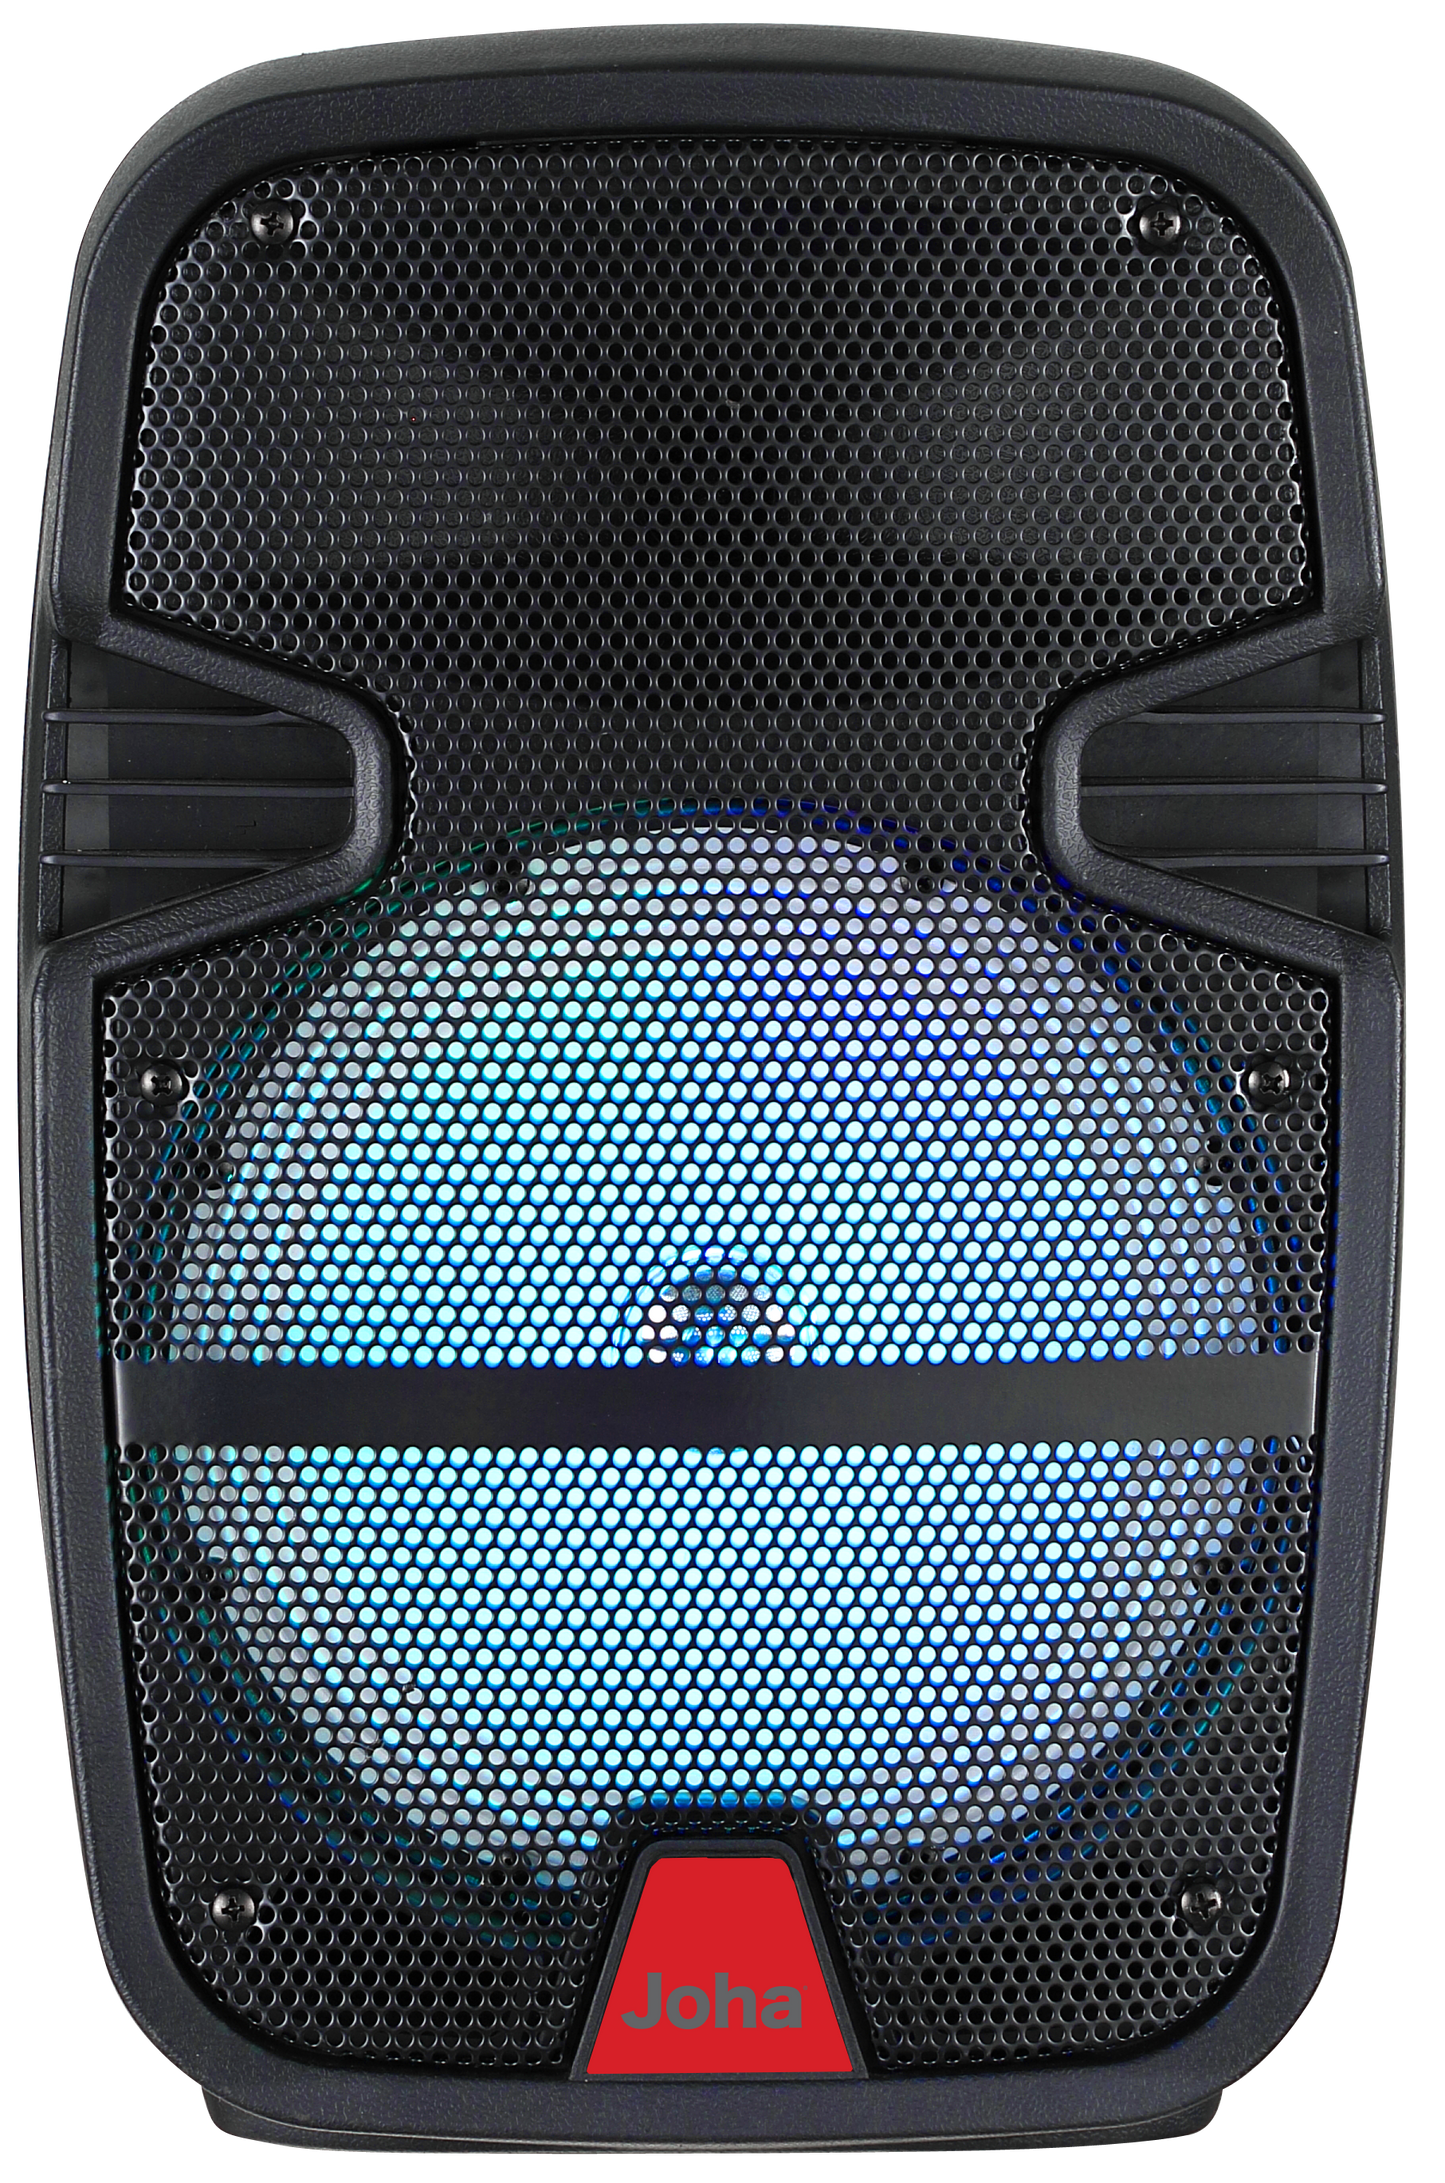 Joha Wireless Speaker (JDS-850) [7500 PMPO]